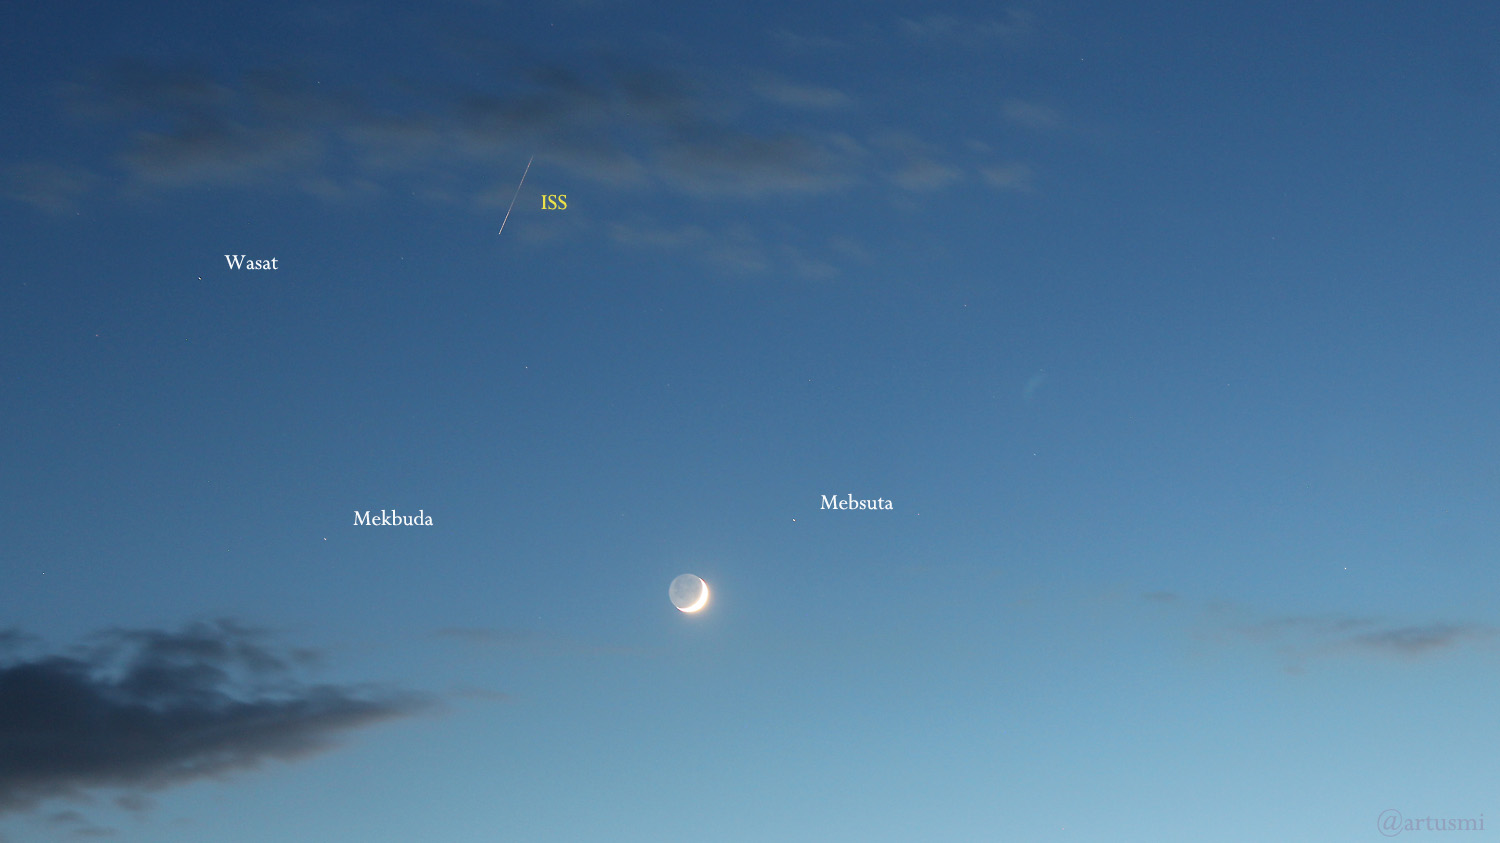 Internationale Raumstation ISS und Mond mit Erdlicht am 25. Mai 2020 um 22:22 Uhr am Westhimmel von Eisingen